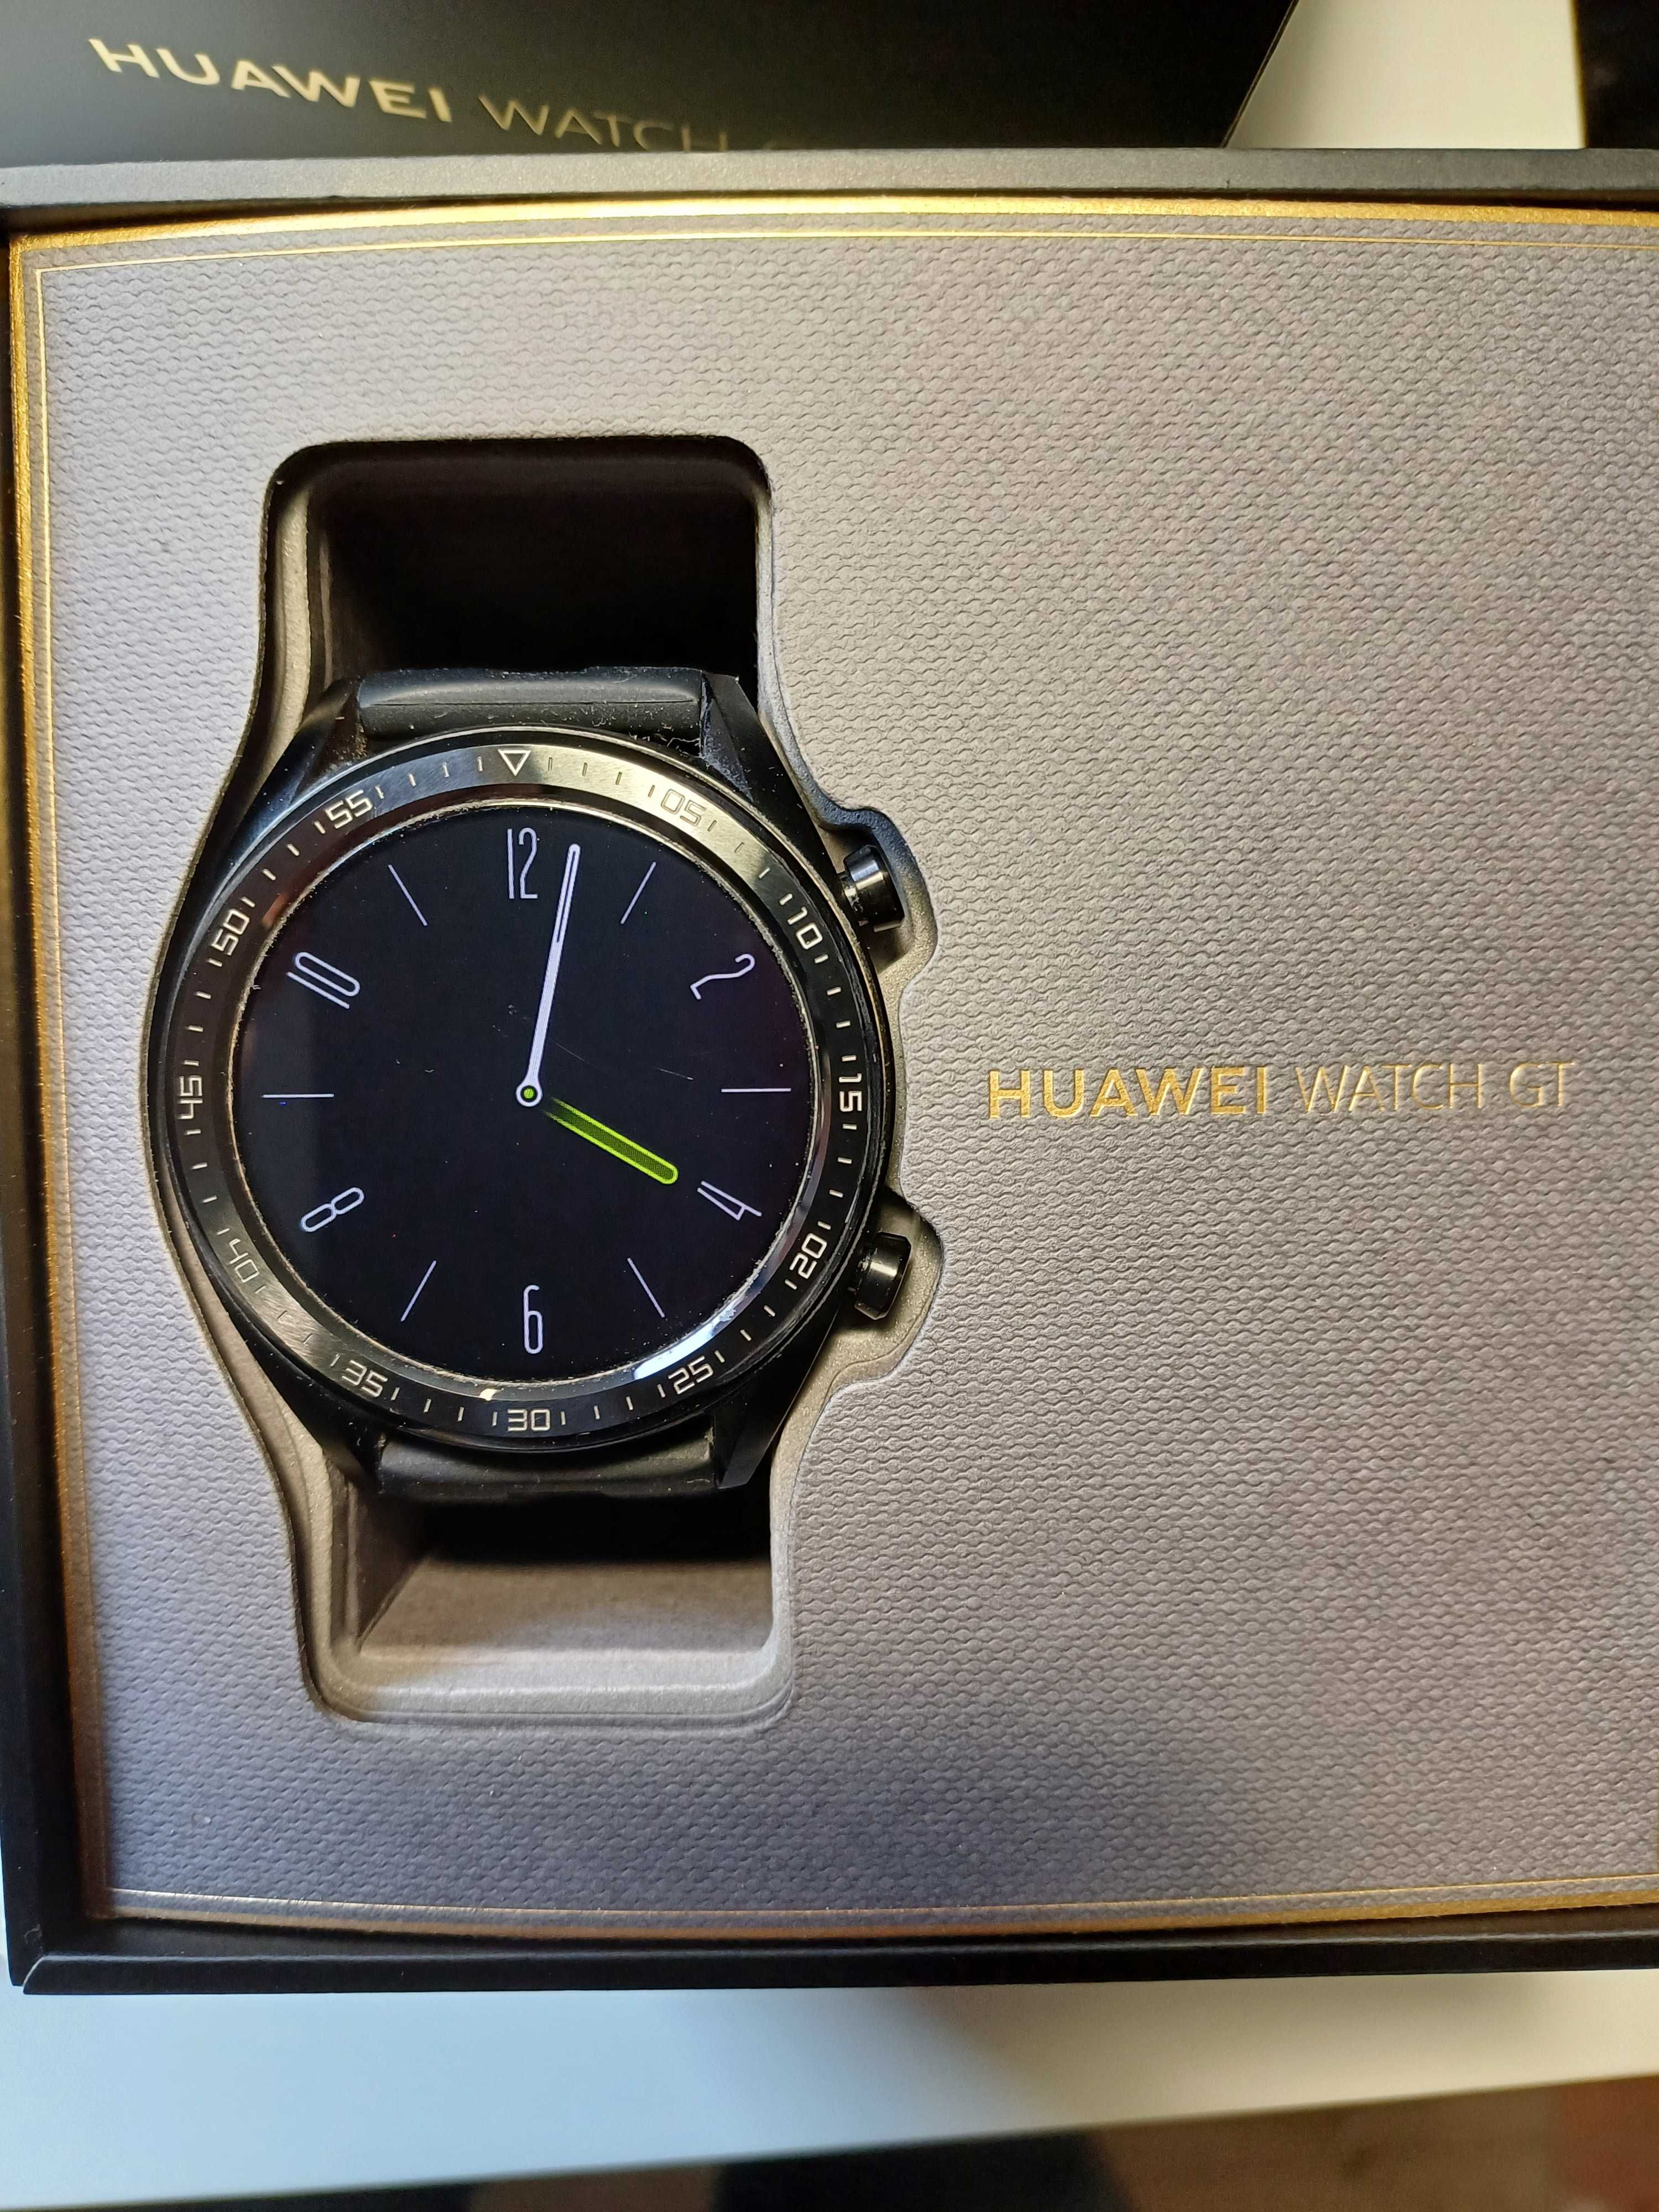 HUAWEI WATCH GT - Smart Watch